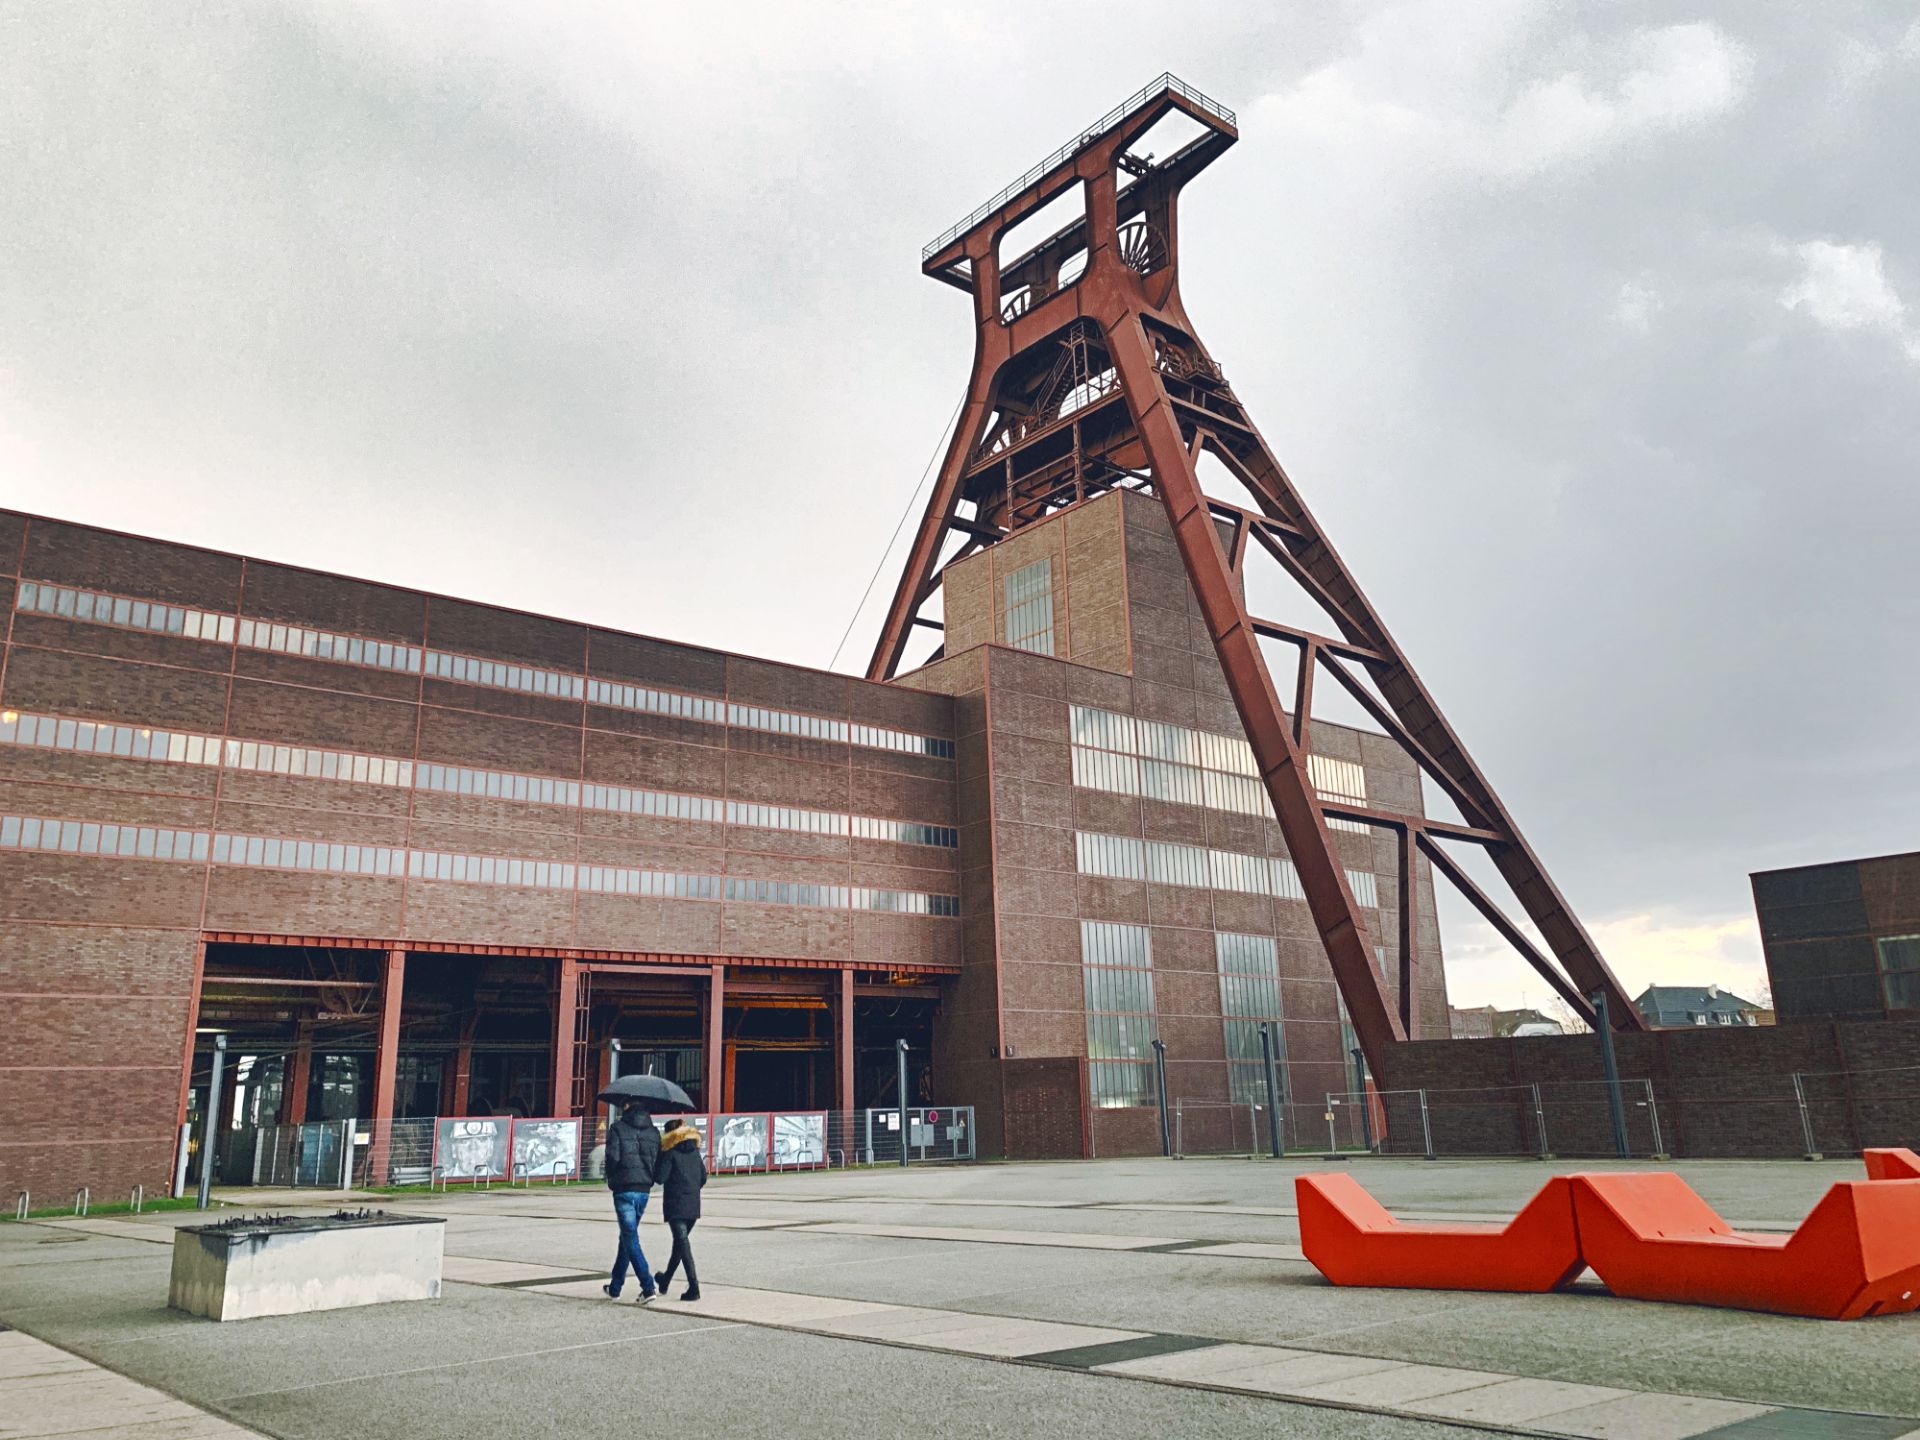 红点博物馆建立时间为上世纪60年代，位于德国西北方向的一个工业城镇埃森，早期由一座旧犹太教堂进行改造